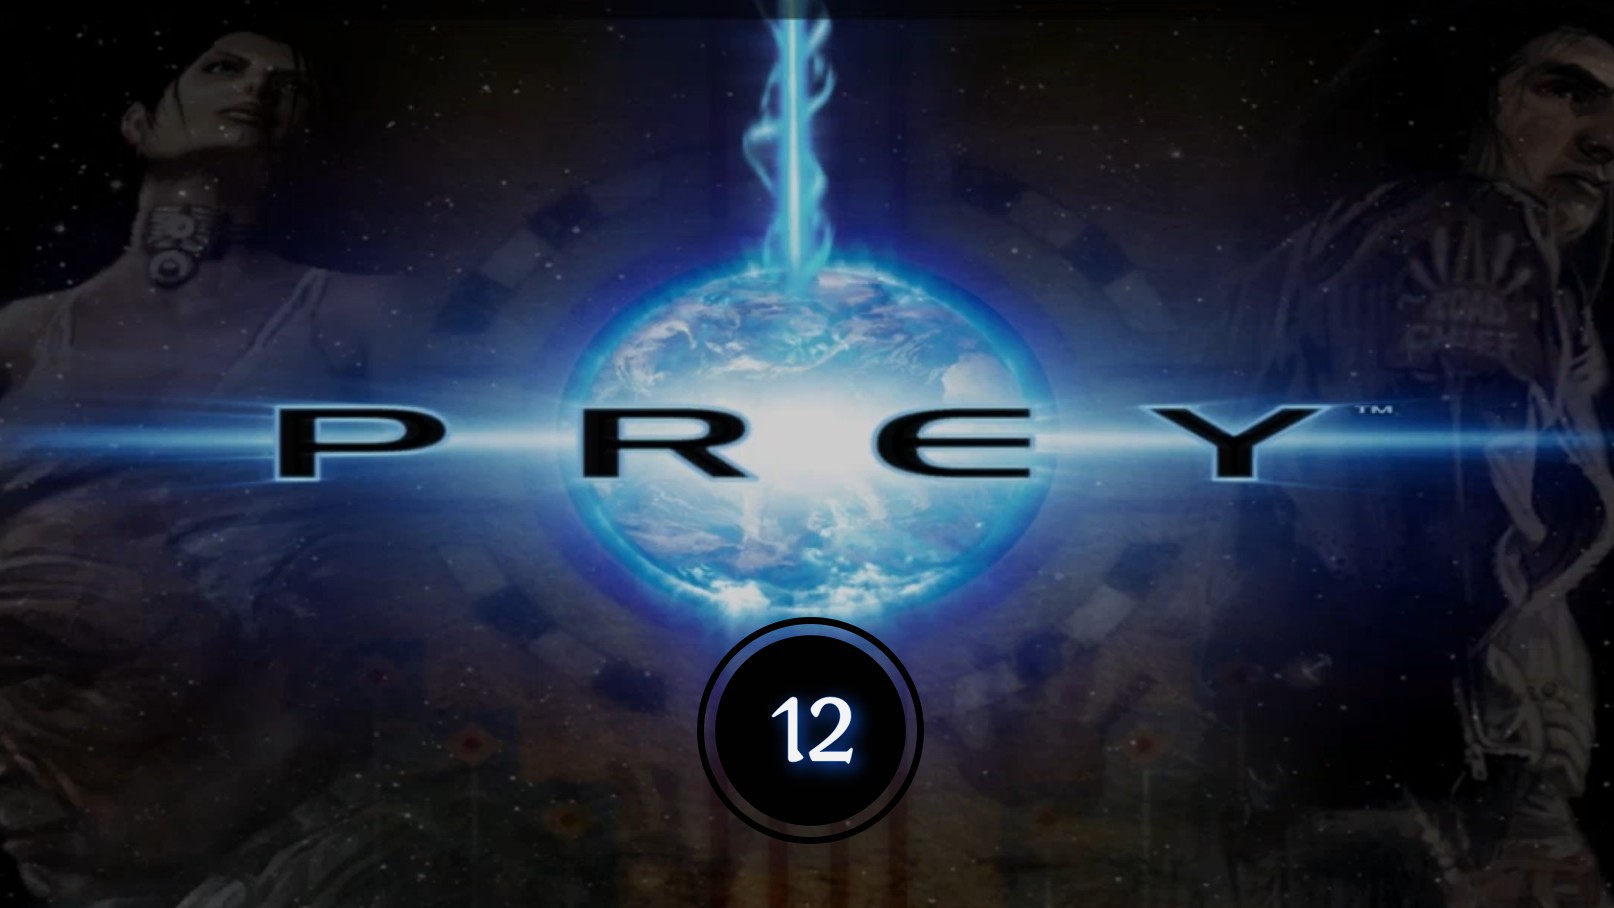 Prey (2006) 12